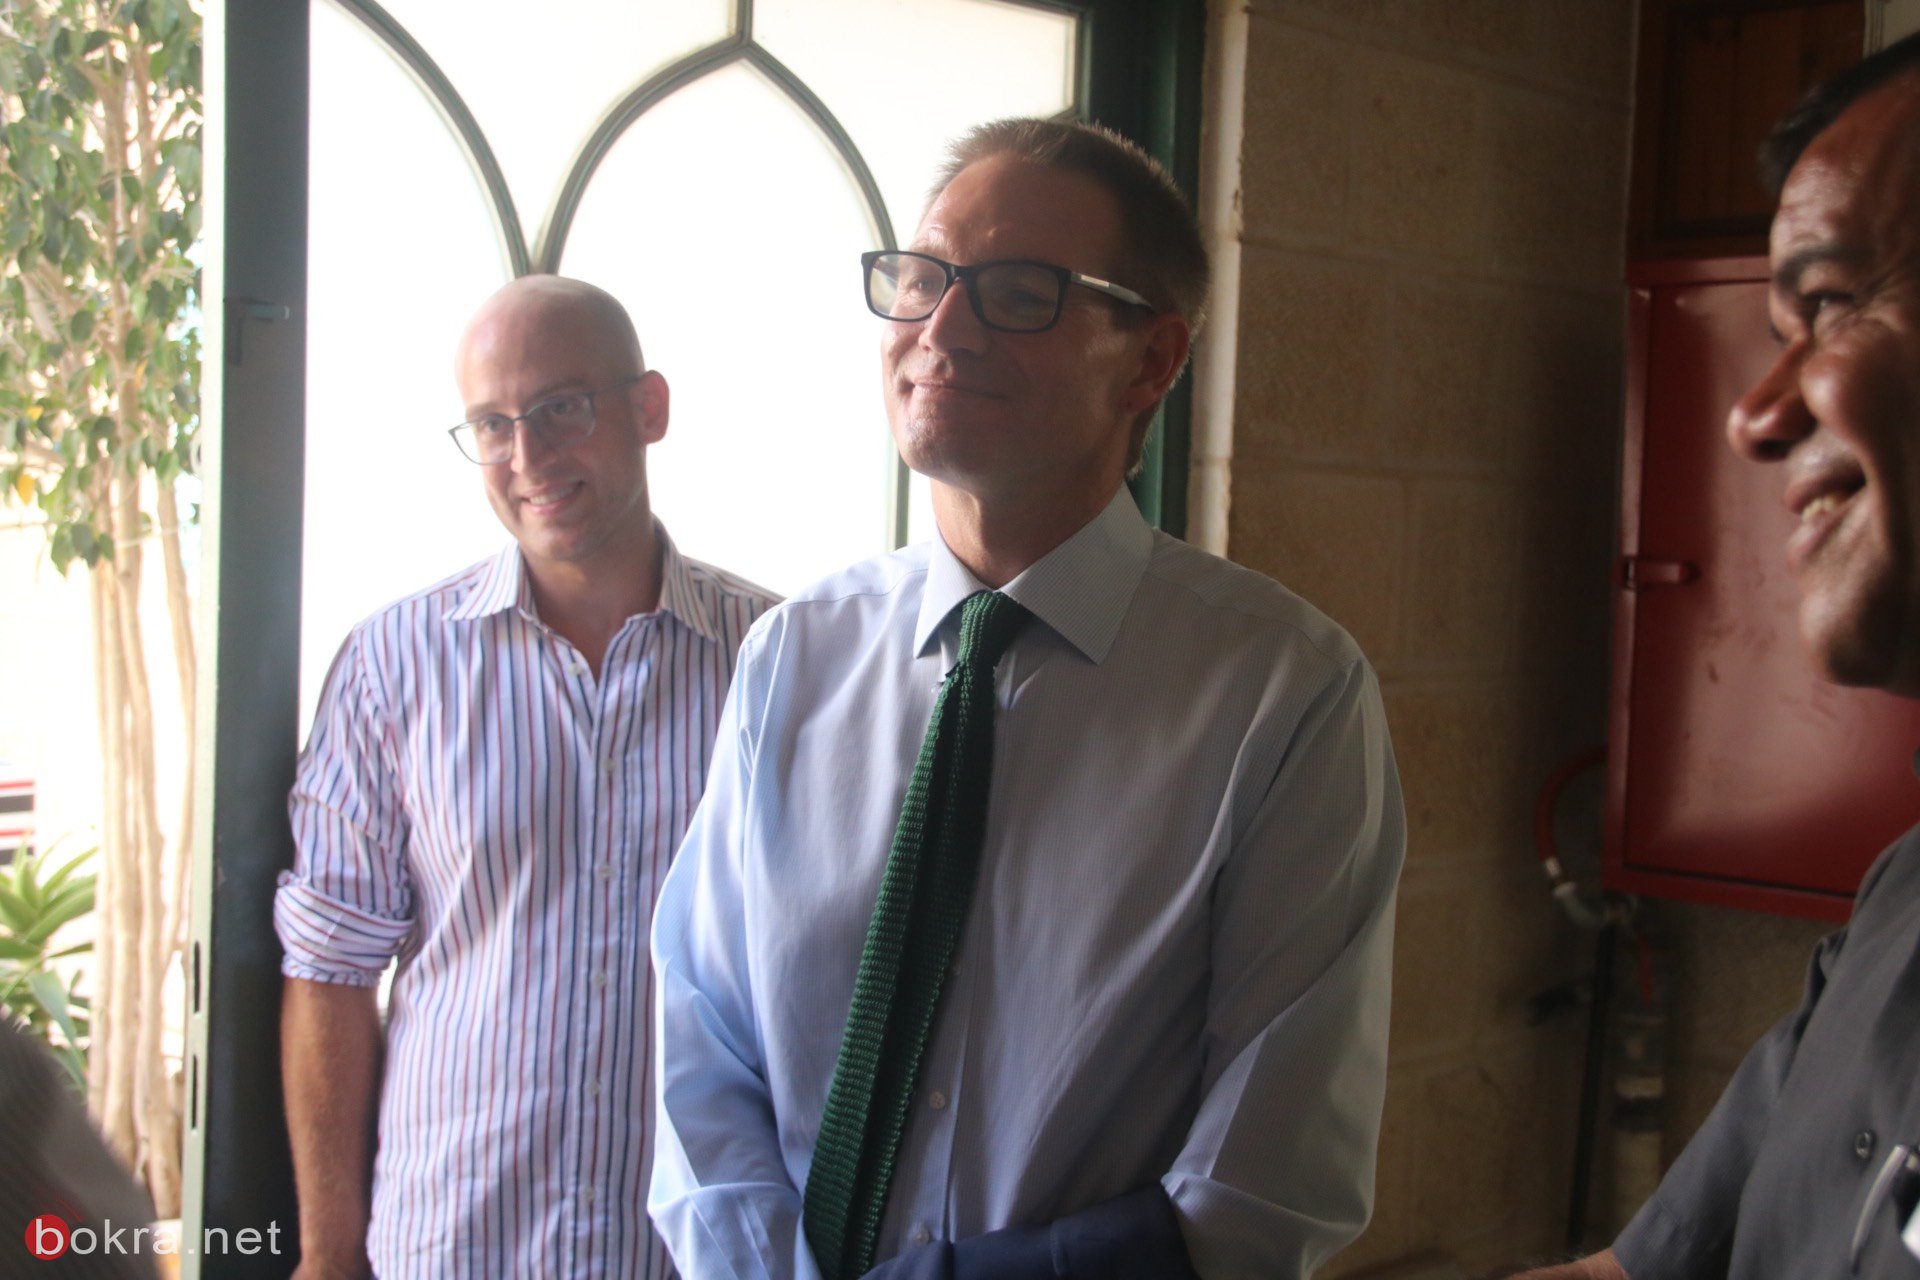 السفير البريطاني الجديد نيل ويچن يزور الناصرة وهذا ما قاله لـ"بُكرا"-26